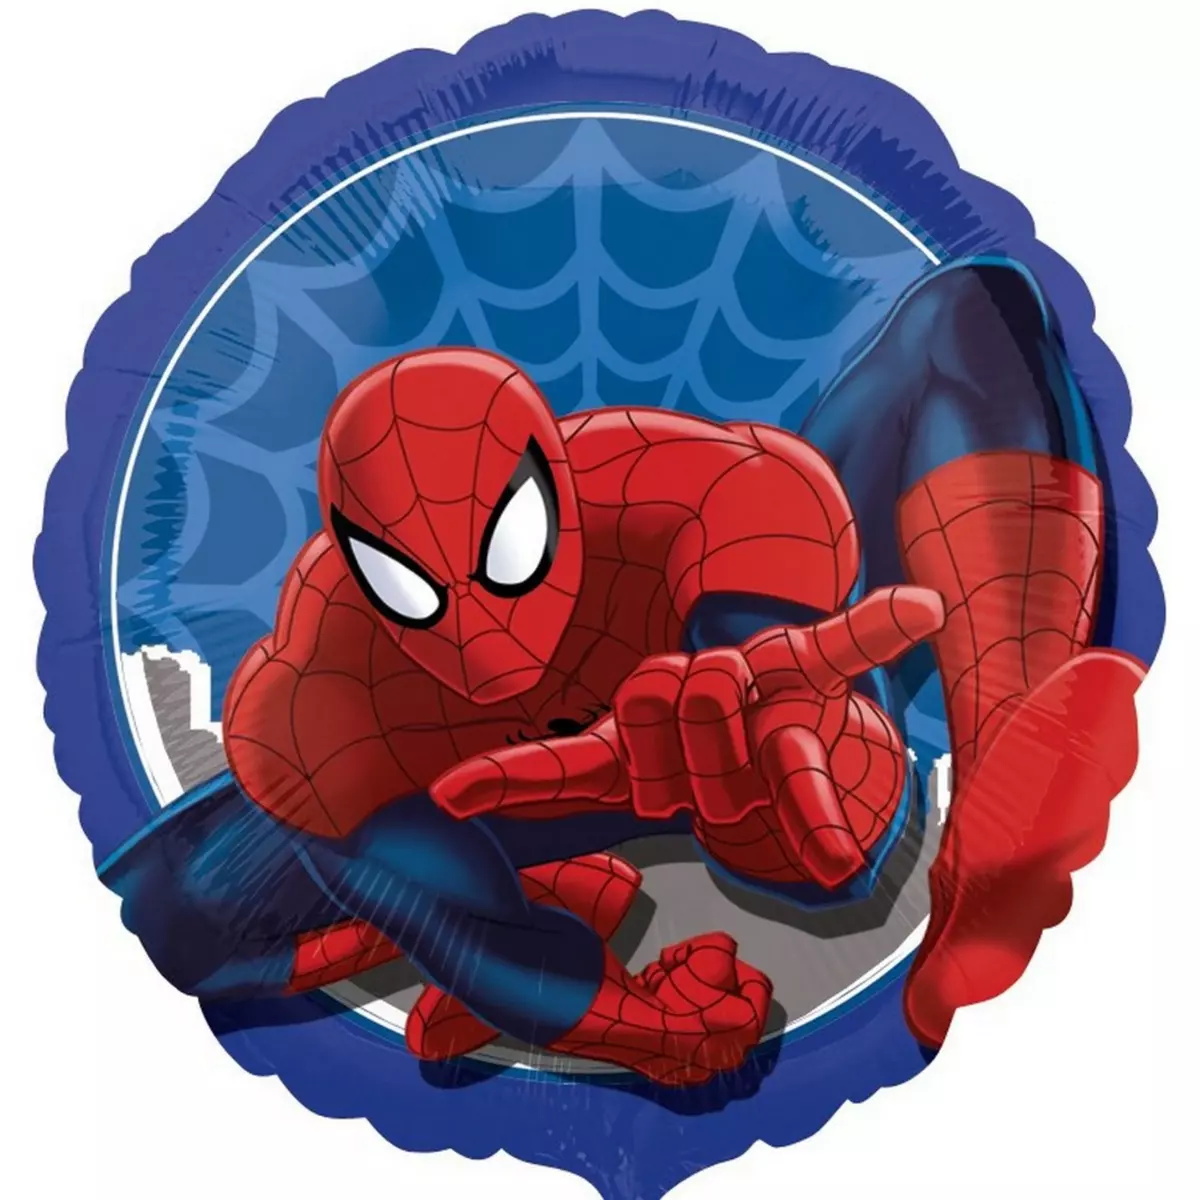 Spiderman Ballon Spiderman hélium Disney Fête enfant new